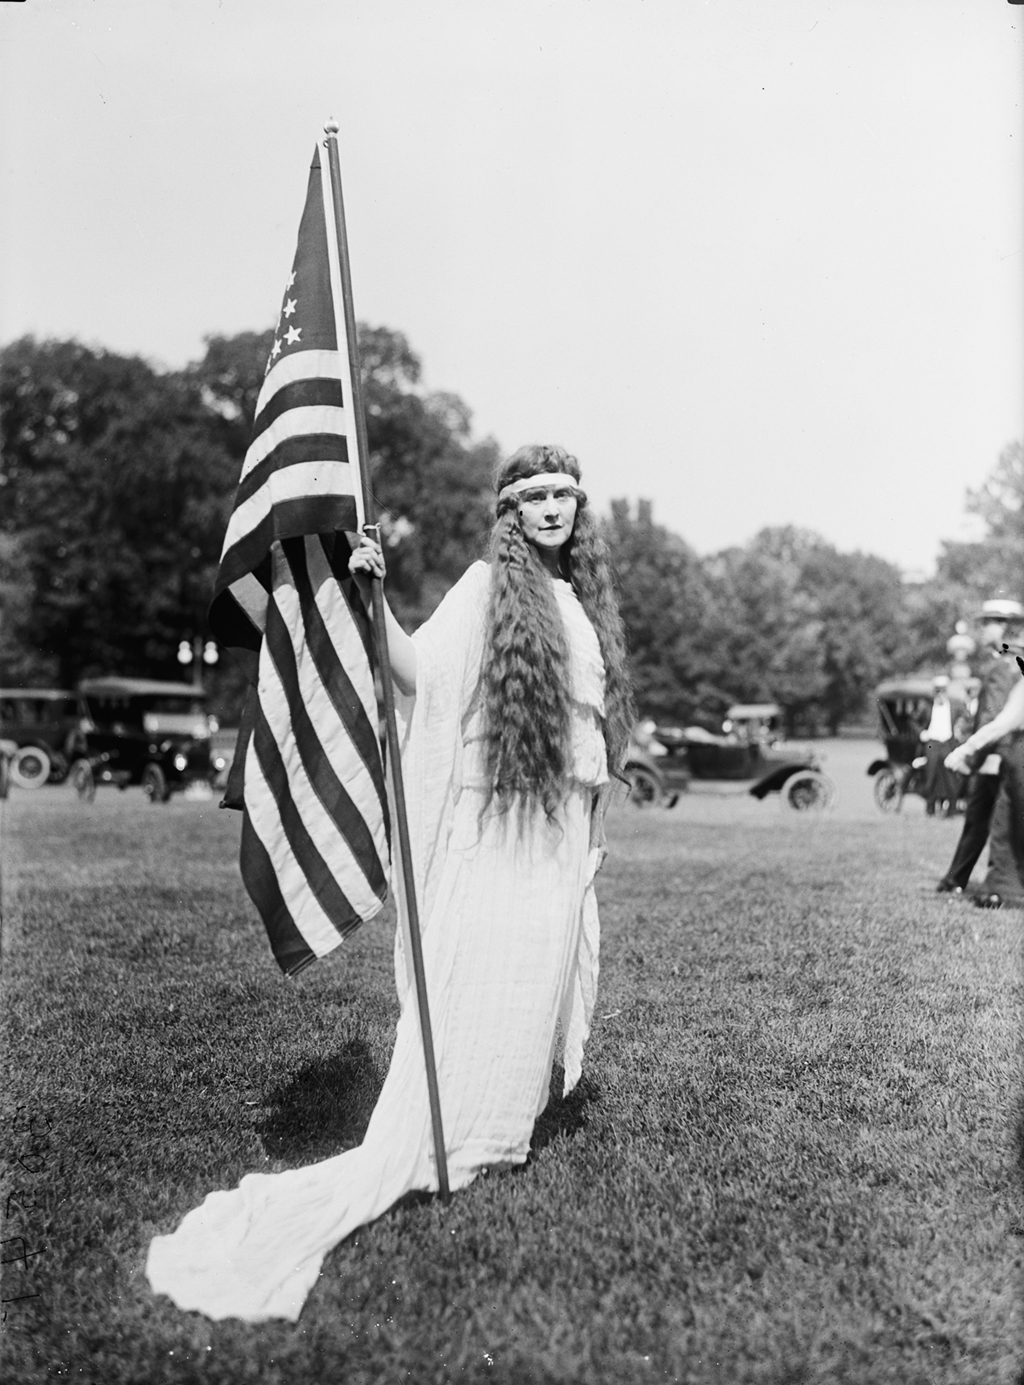 Photograph via Harris & Ewing Collection (Library of Congress). 